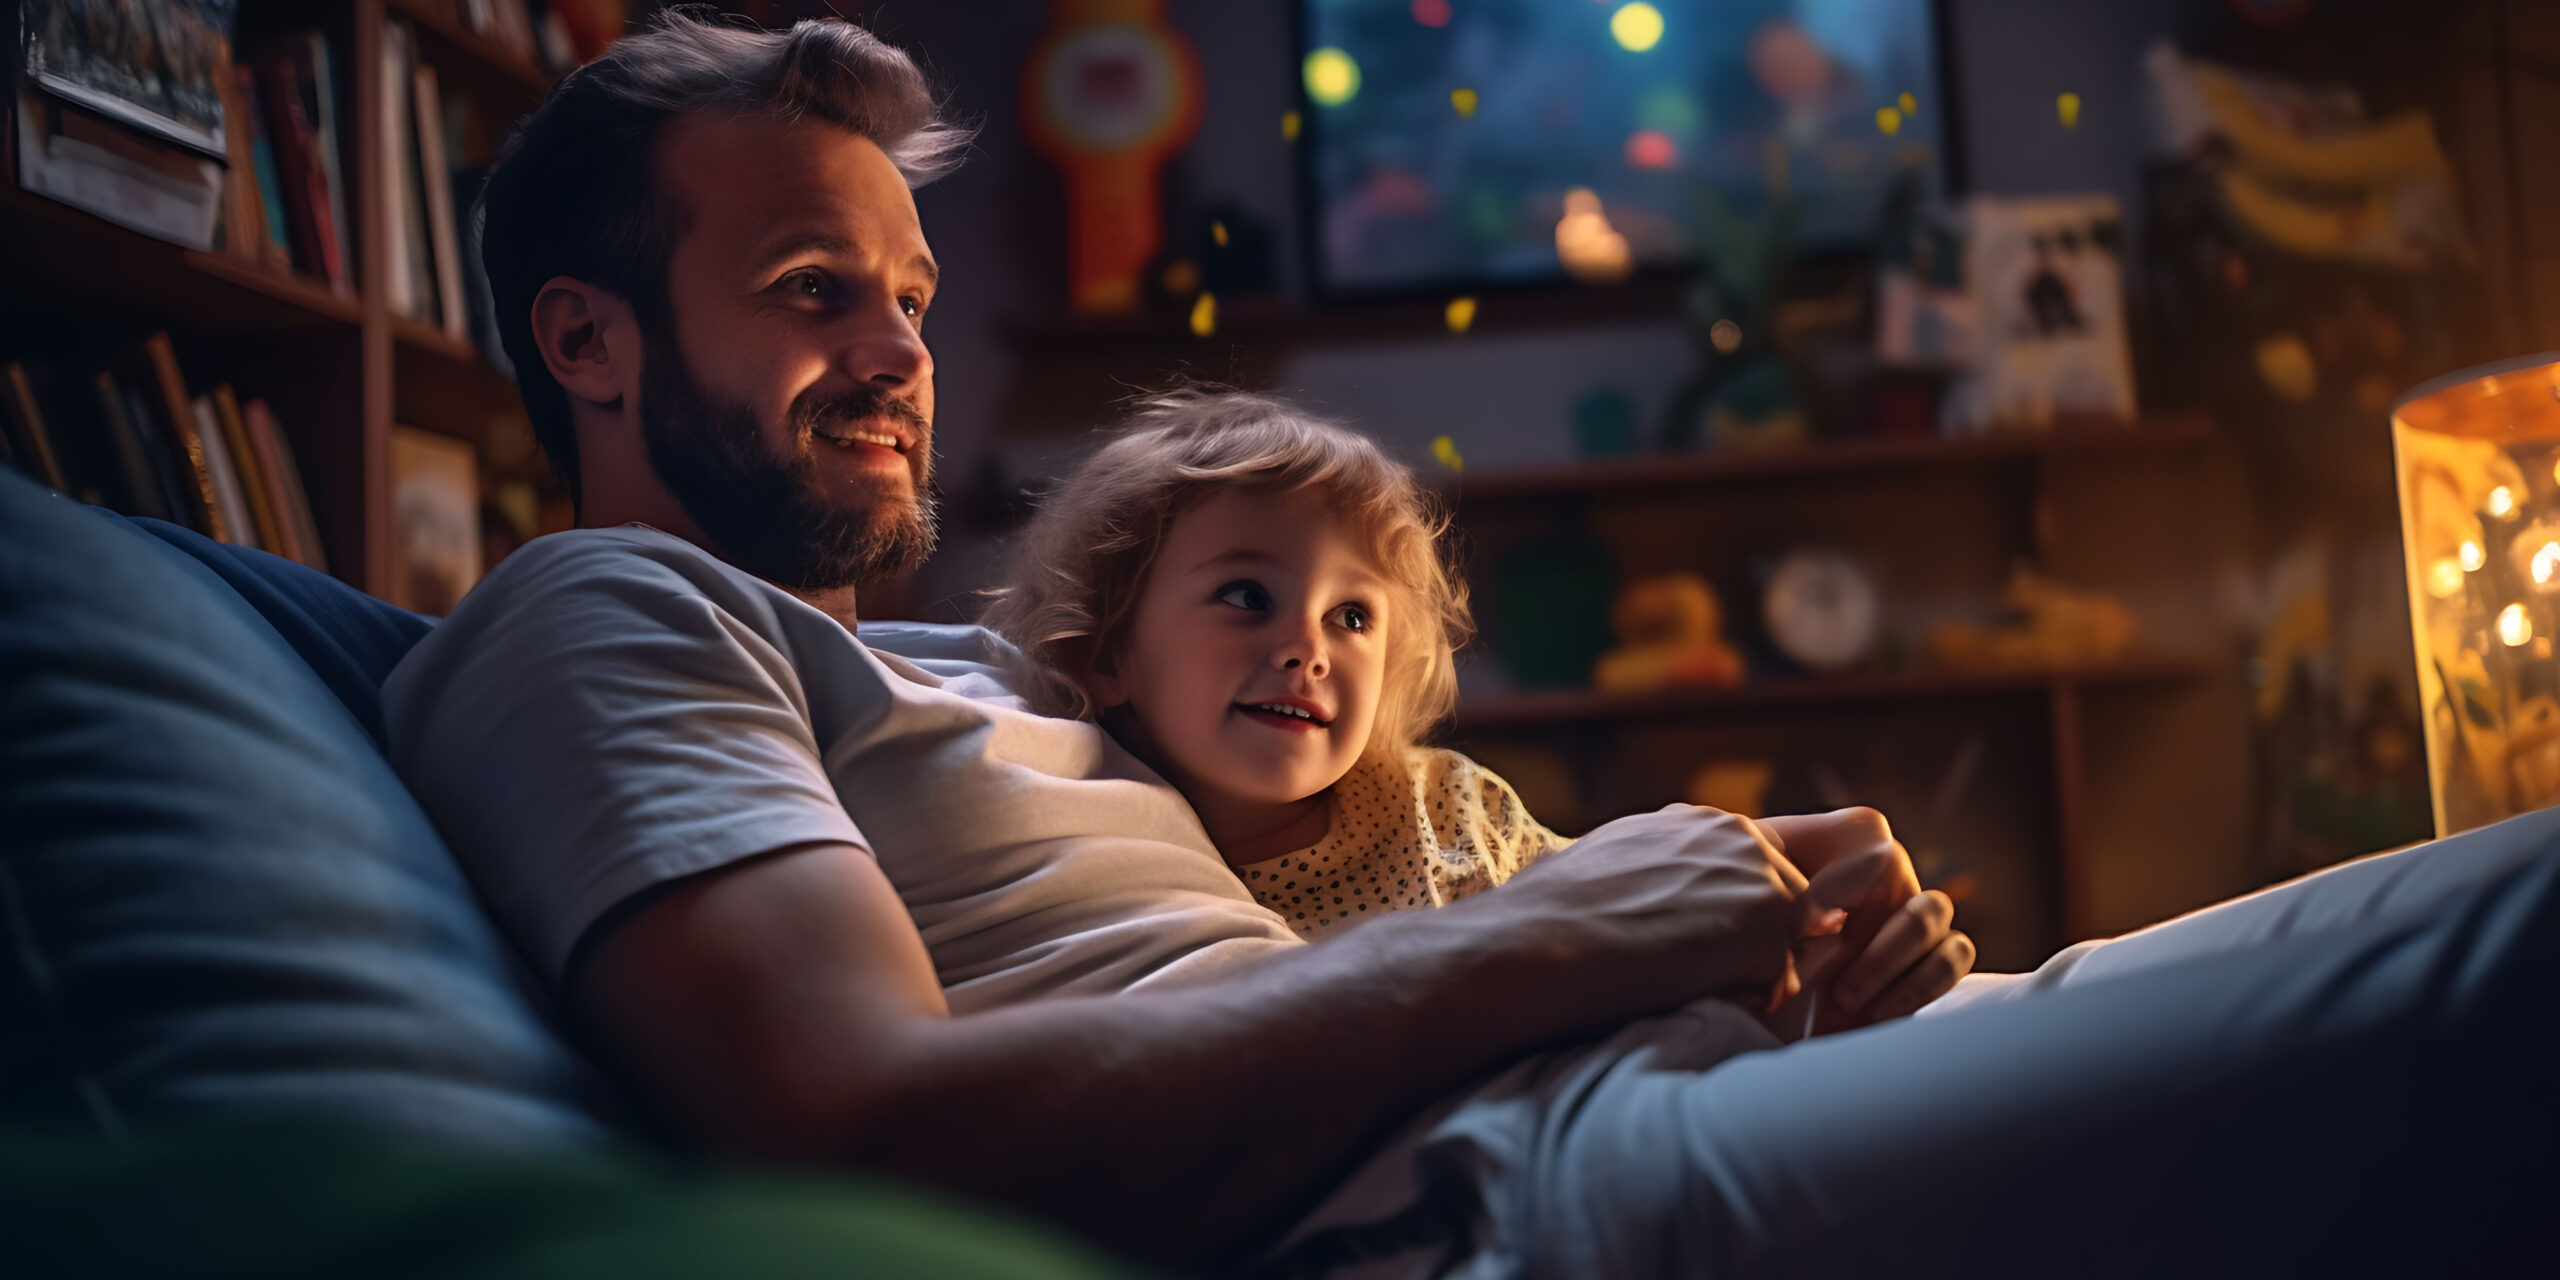 Vater und Tochter sitzen abends gemütlich auf der Couch und schauen einen Film